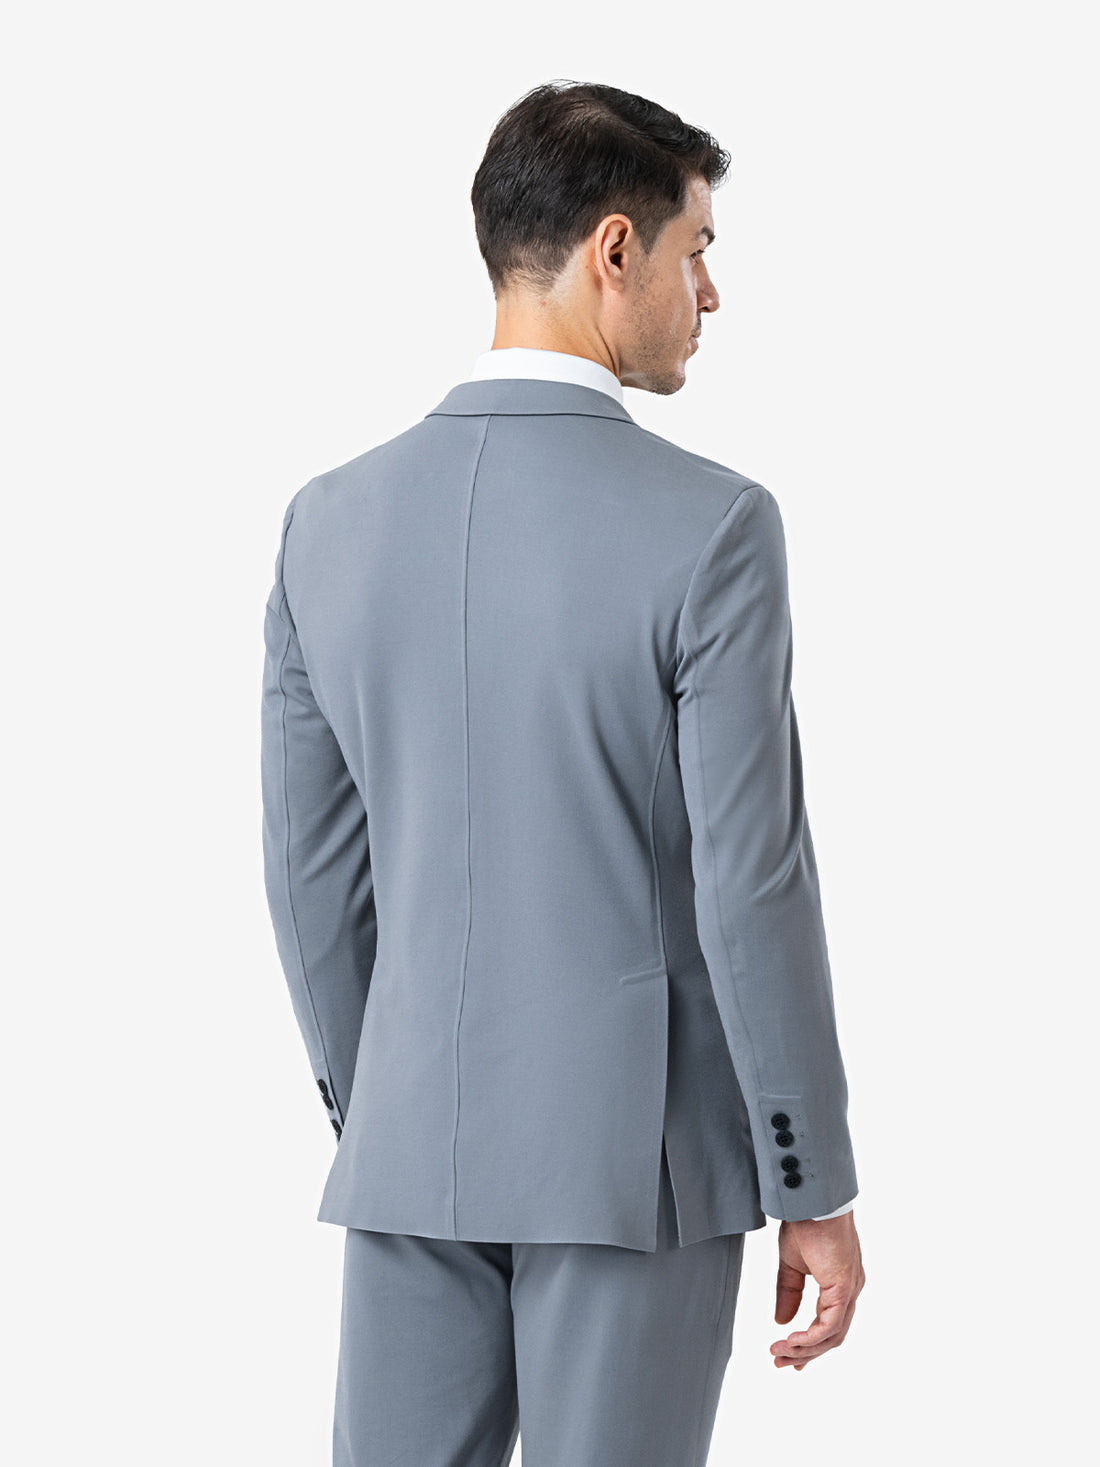 xSuit 4.0 Light Grey | Super Stretch & Machine Washable Men's Suit